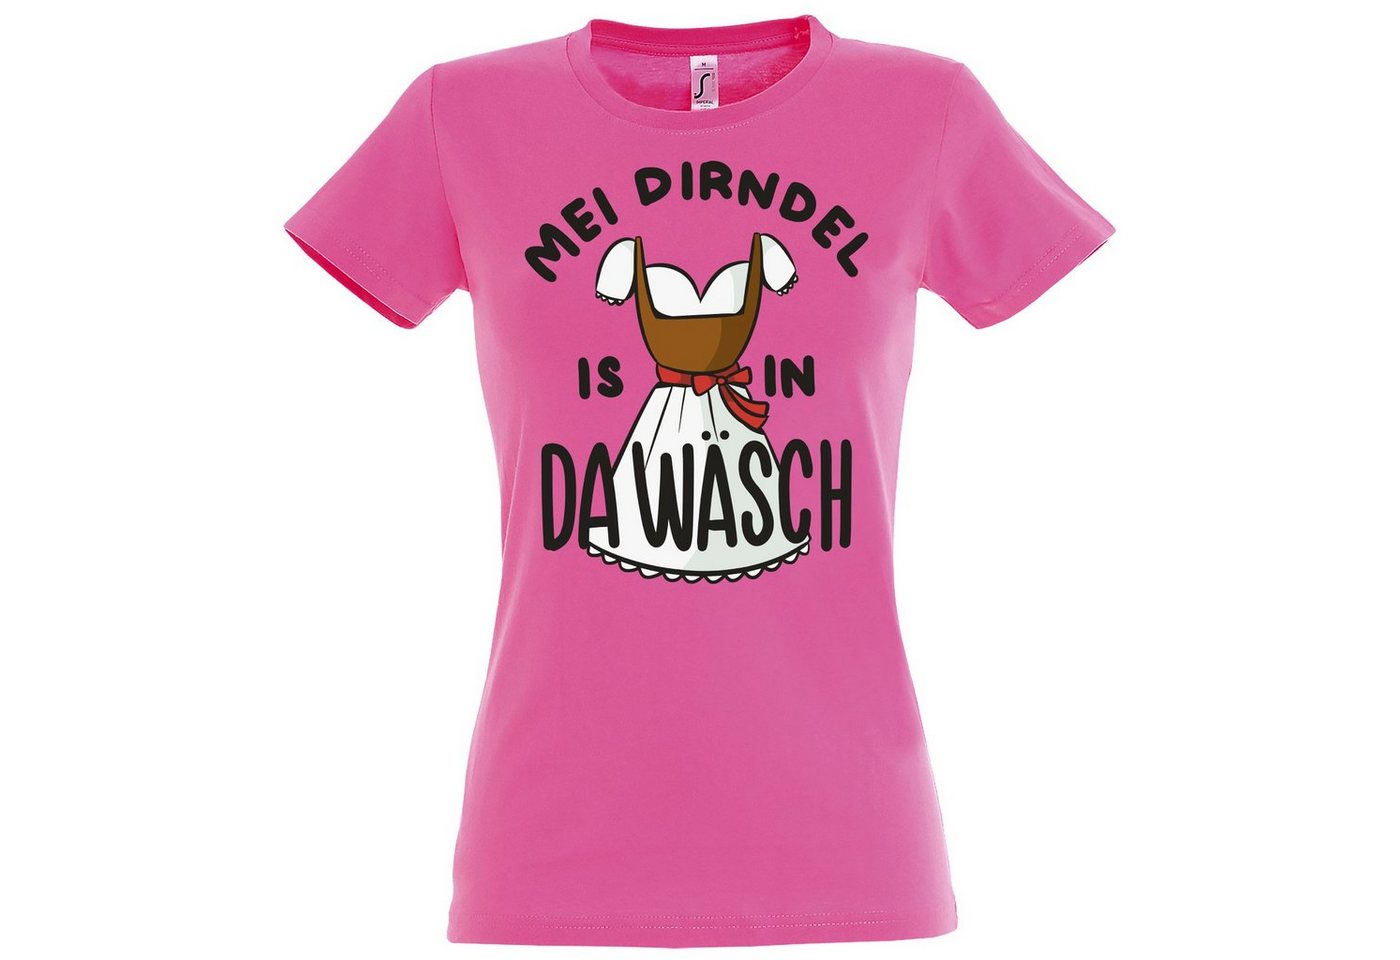 Youth Designz Print-Shirt MEI DIRNDEL IS IN DA WÄSCH Damen T-Shirt mit Fun-Look Dirndl Aufdruck und lustigem Spruch von Youth Designz